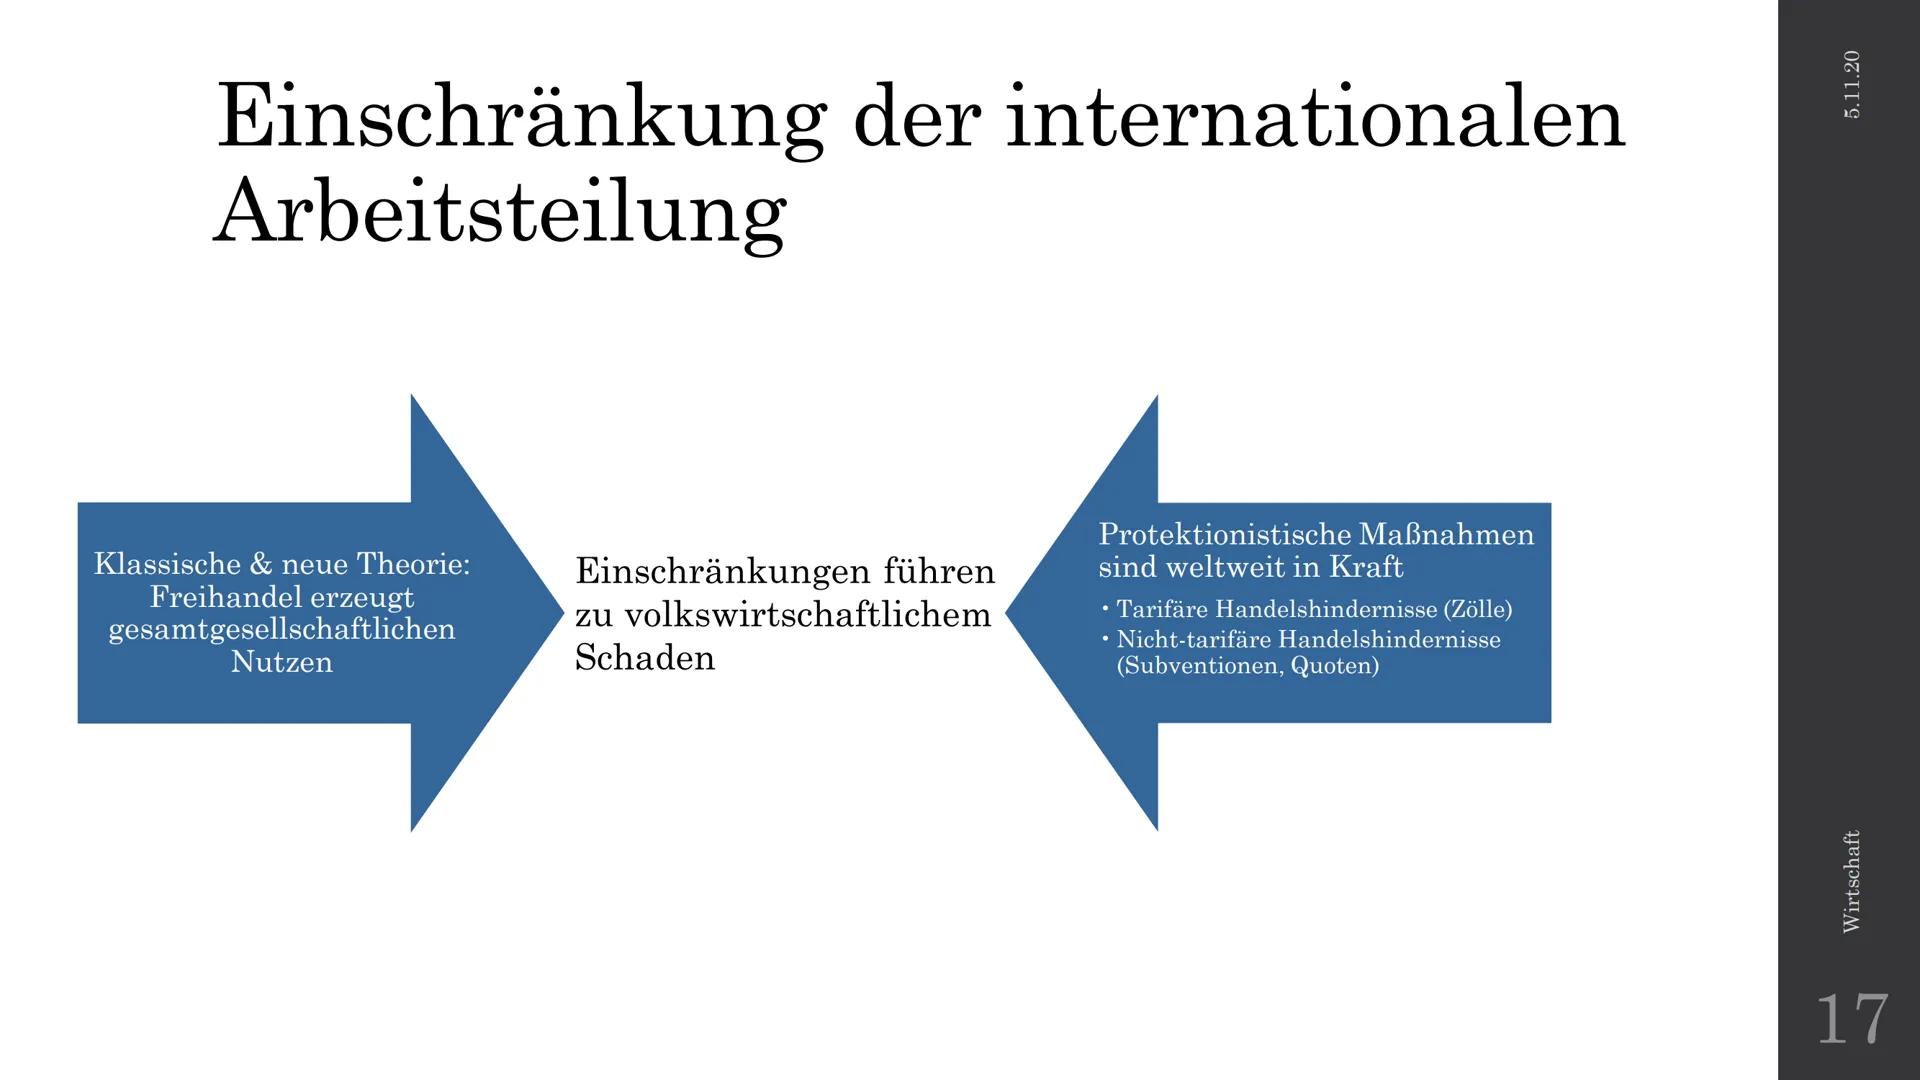 HMM
28
Wie erklären unterschiedliche Ansätze
die internationale Arbeitsteilung und
deren Einschränkung?
Neuere Außenhandelstheorien
Wirtscha